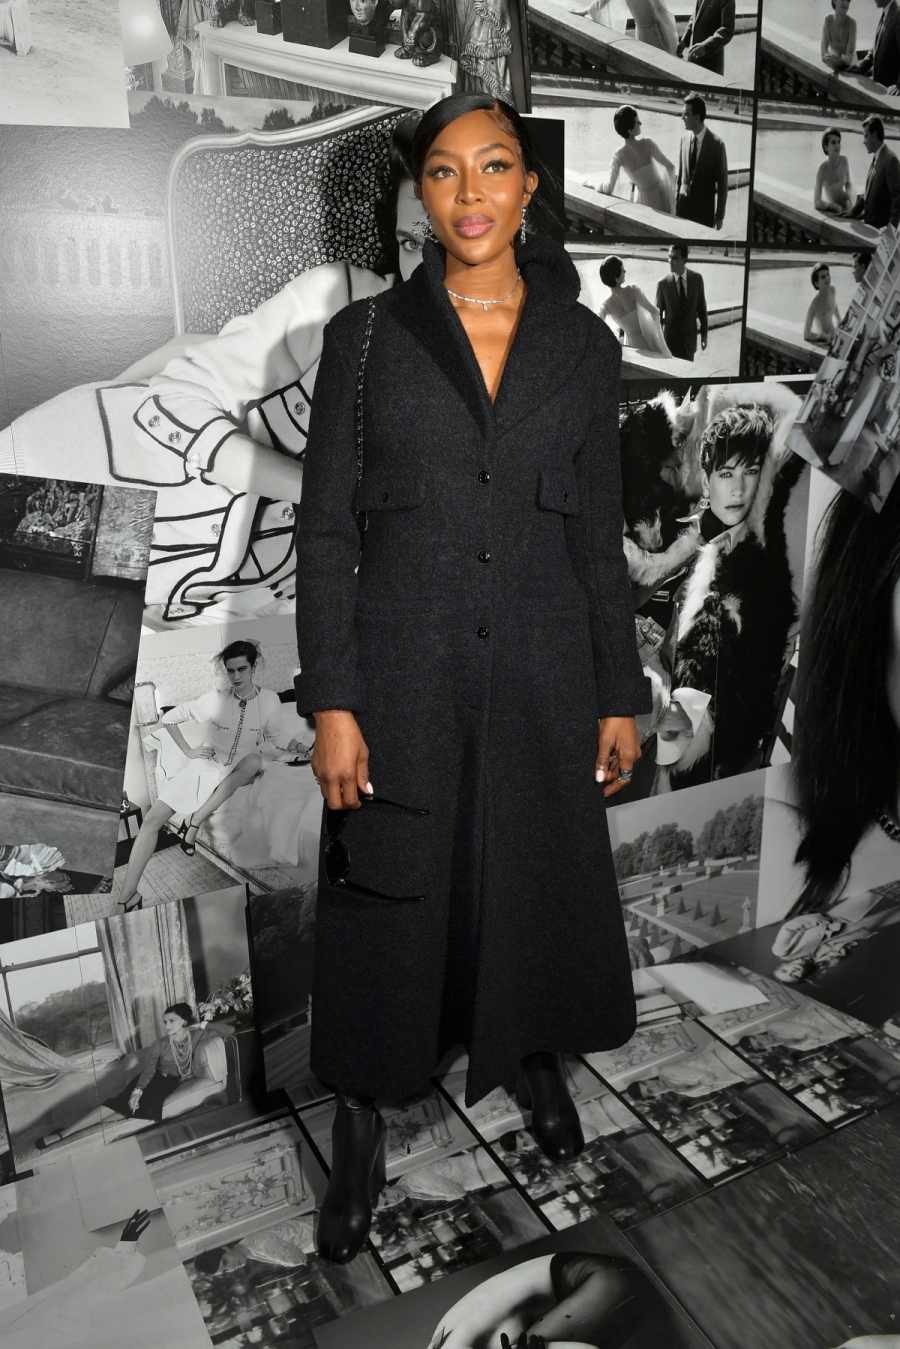 Siêu mẫu Naomi Campbell không hổ danh là 'Báo Đen' của làng thời trang. Cô mặc một chiếc áo trench coat vải tweed đen không điểm nhấn, phối với một đôi boots đen. Công bằng mà nói, outfit của siêu mẫu kì cựu sang trọng nhưng hơi thiếu điểm nhấn.